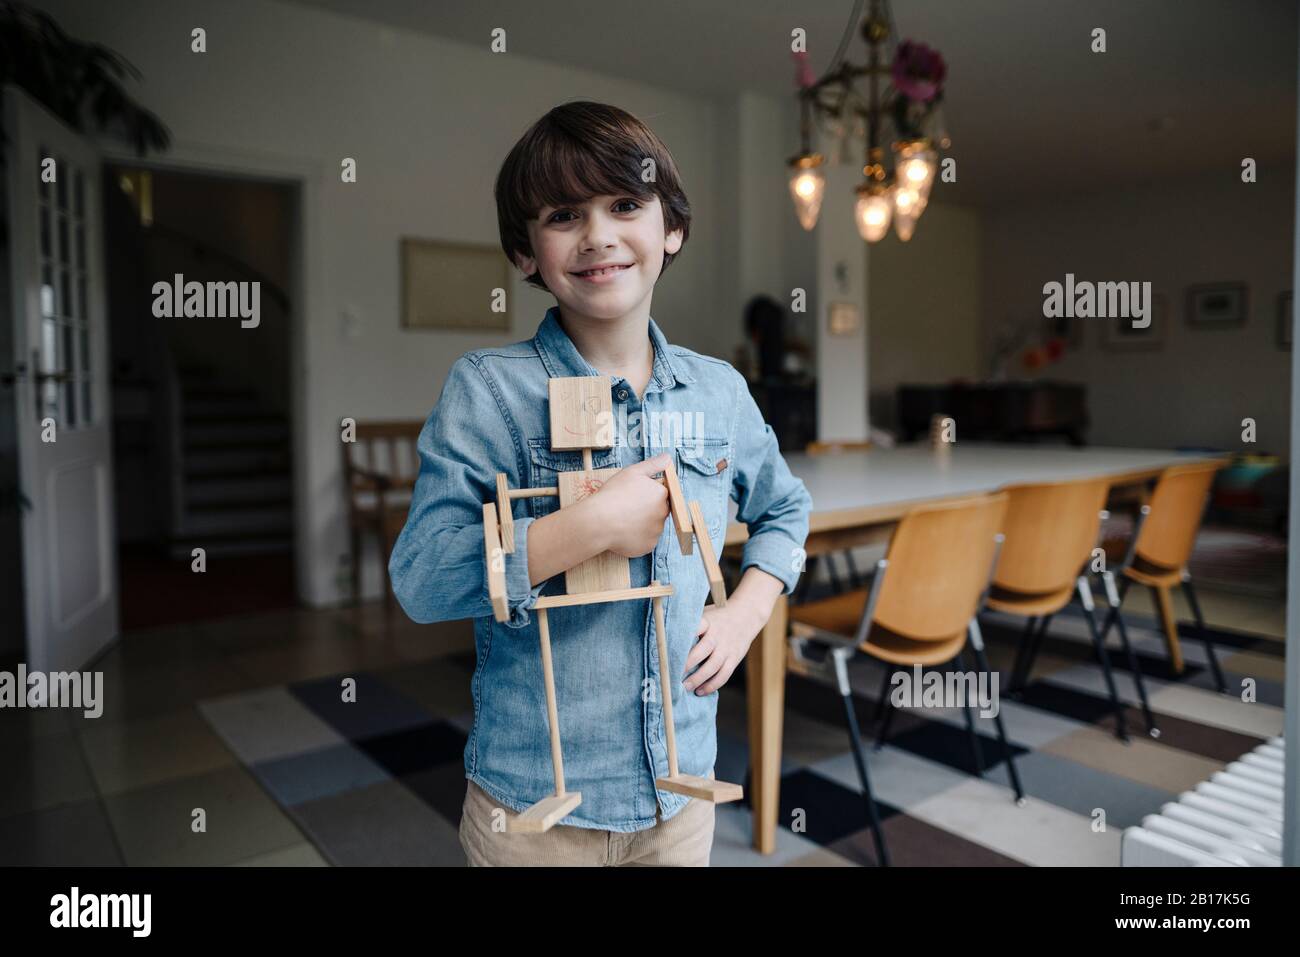 Kleiner Junge, der im Speisesaal steht und selbstgemachten Spielzeugroboter hält Stockfoto